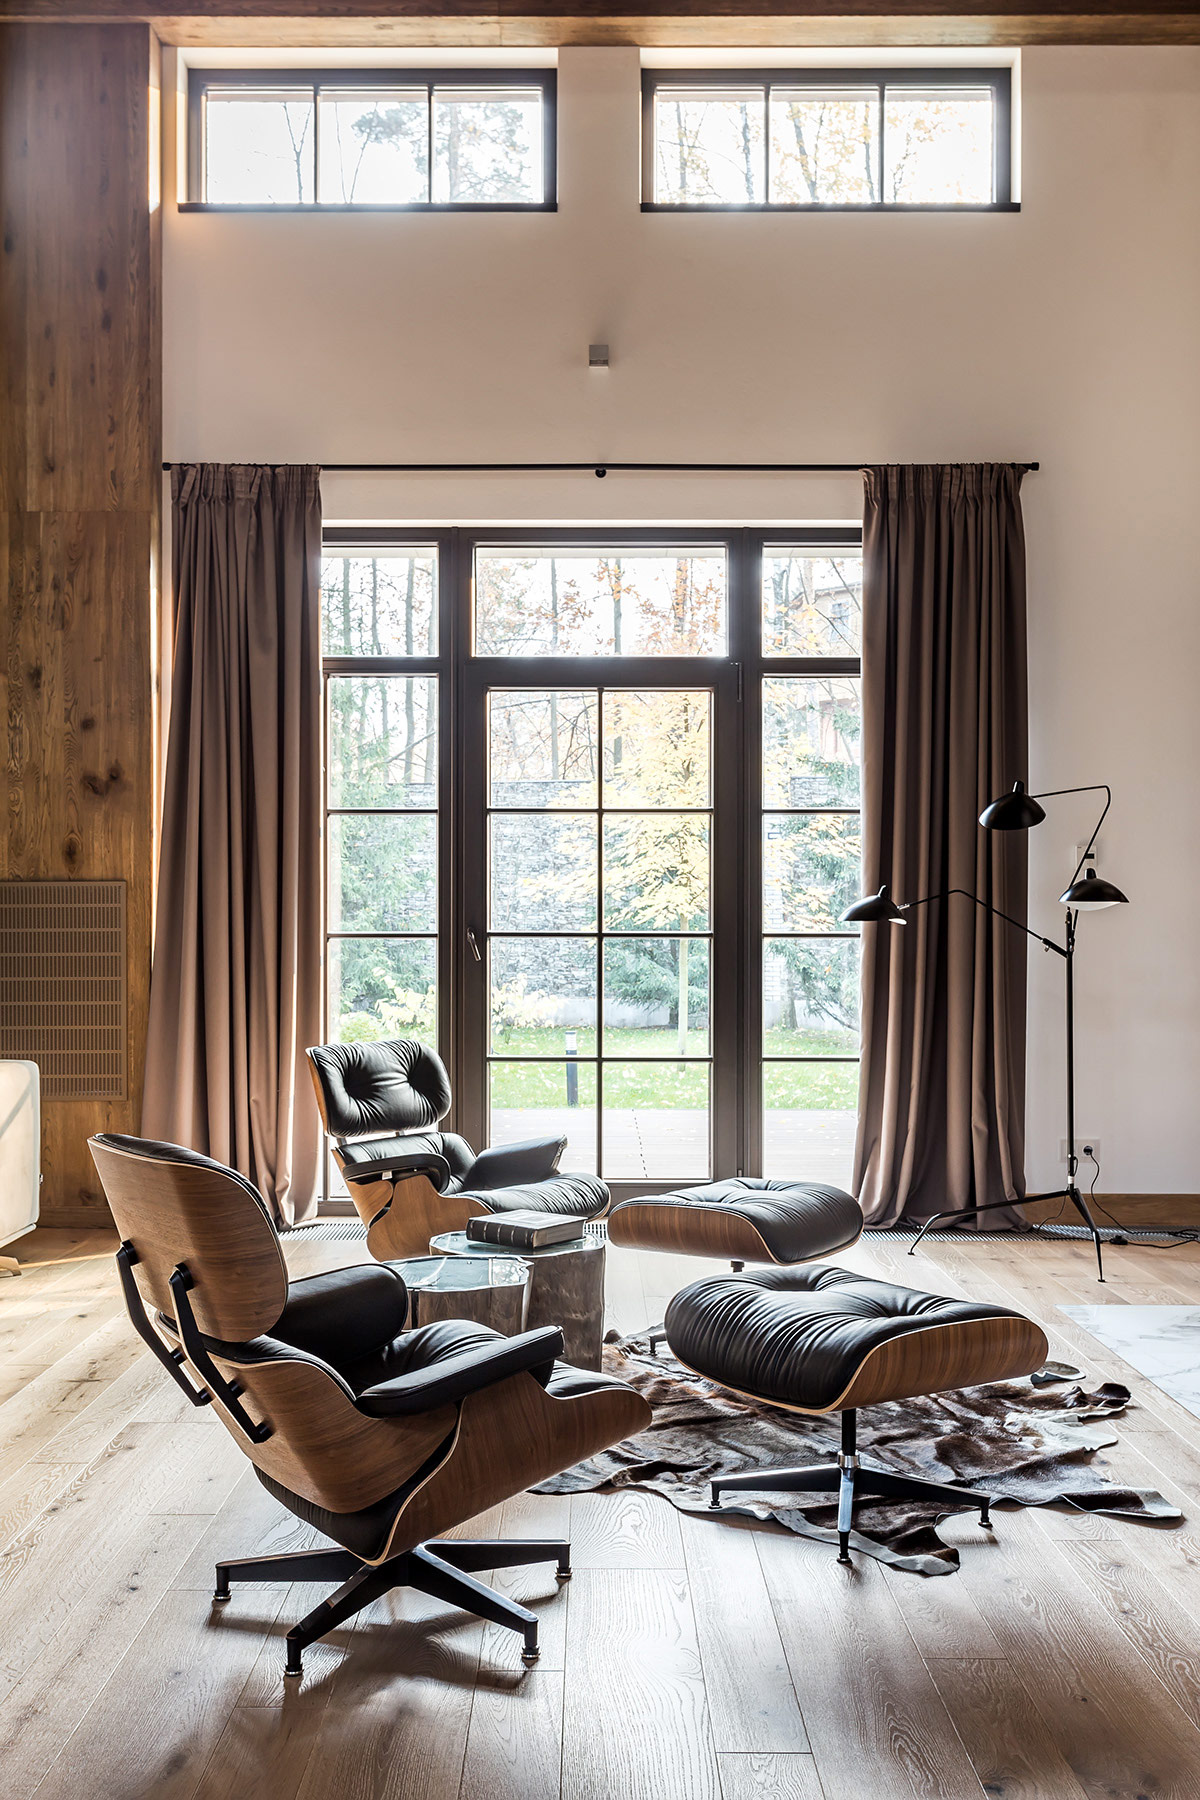 Hai chiếc ghế salon kiểu Eames và ghế đôn phù hợp để các thành viên gia đình quây quần bên lò sưởi ấm áp.